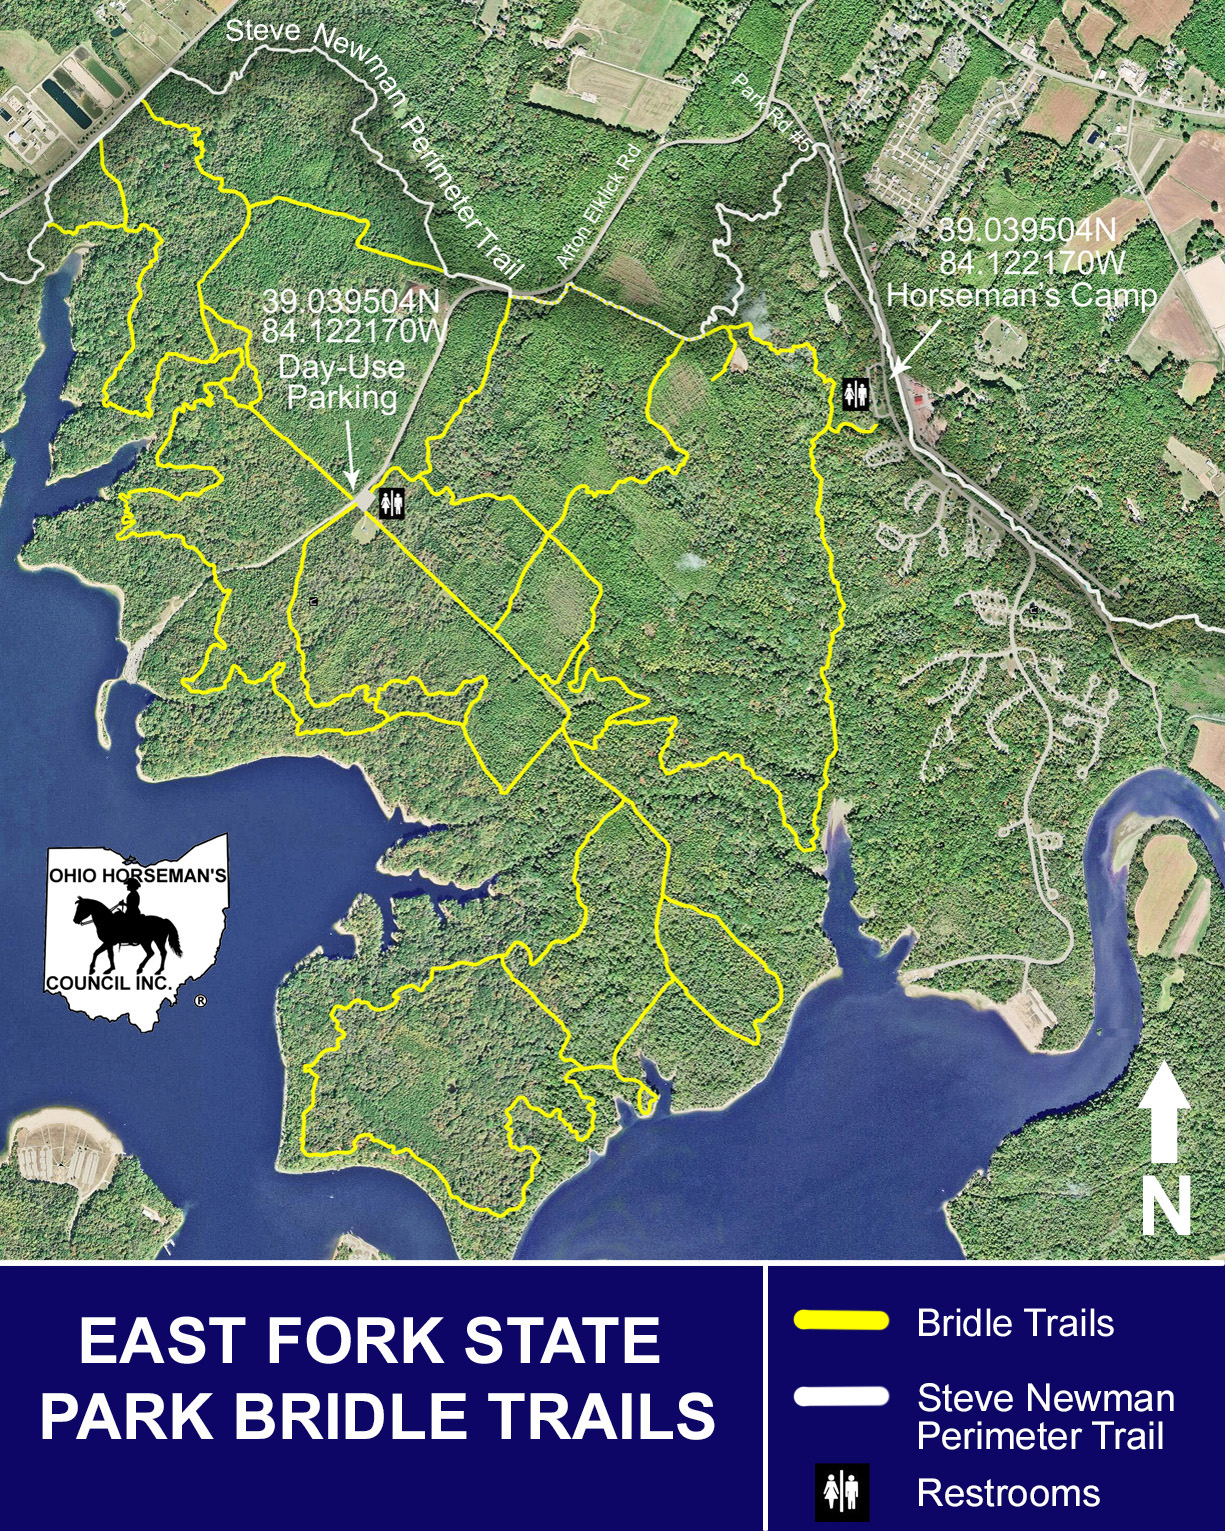 East Fork State Park